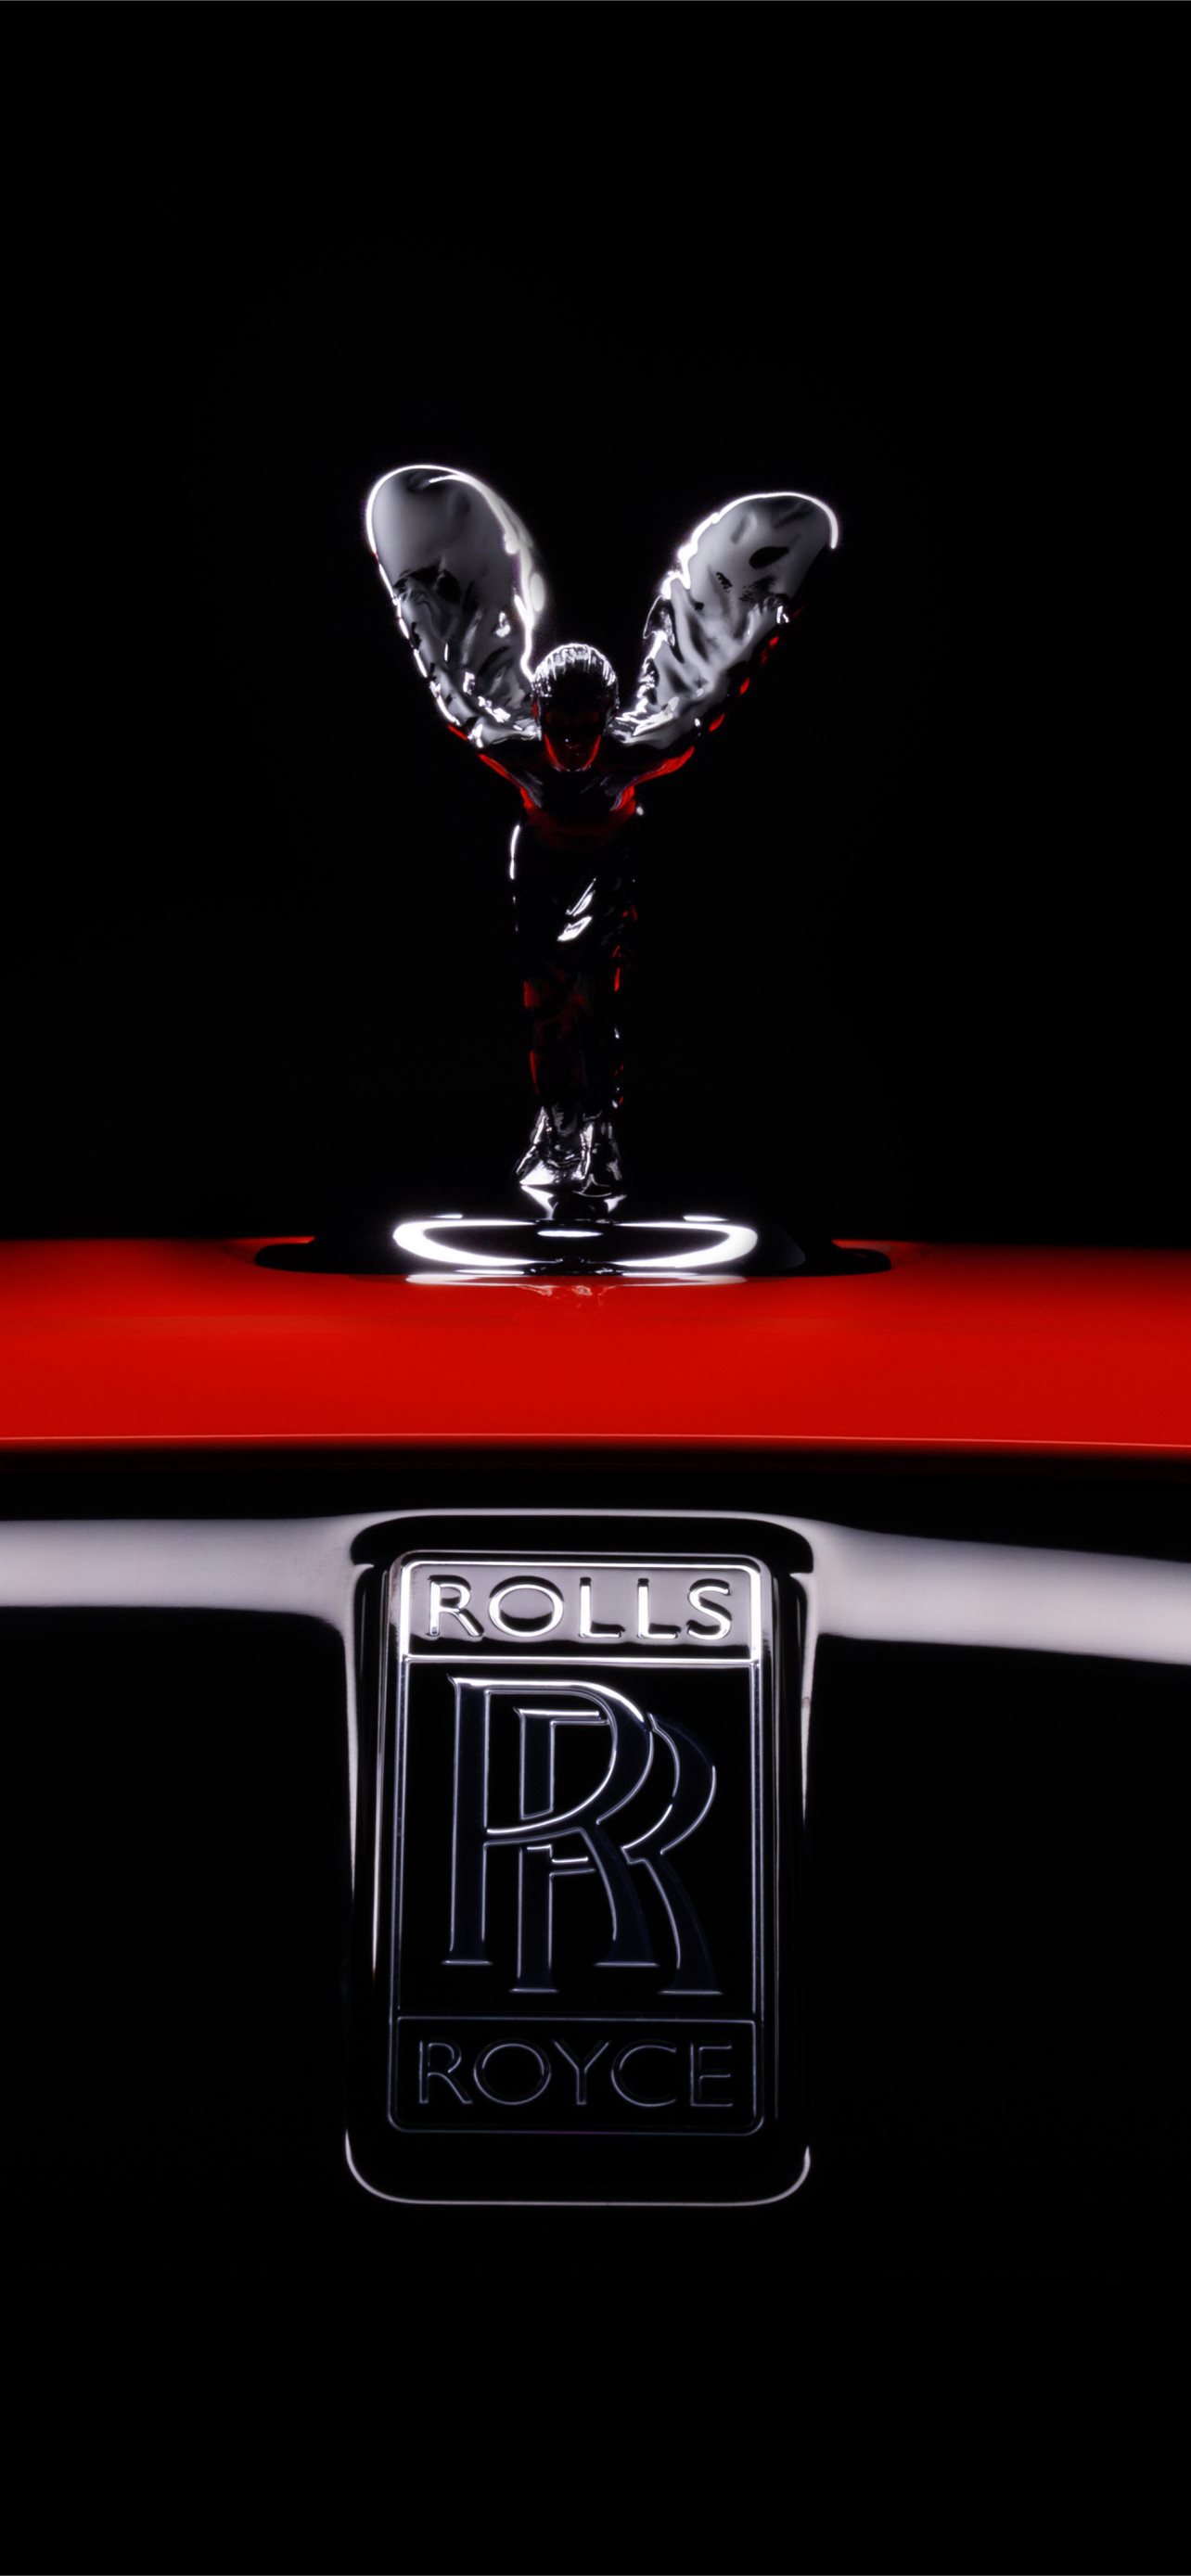 Best Rolls royce logo iPhone HD Wallpapers   iLikeWallpaper 1284x2778